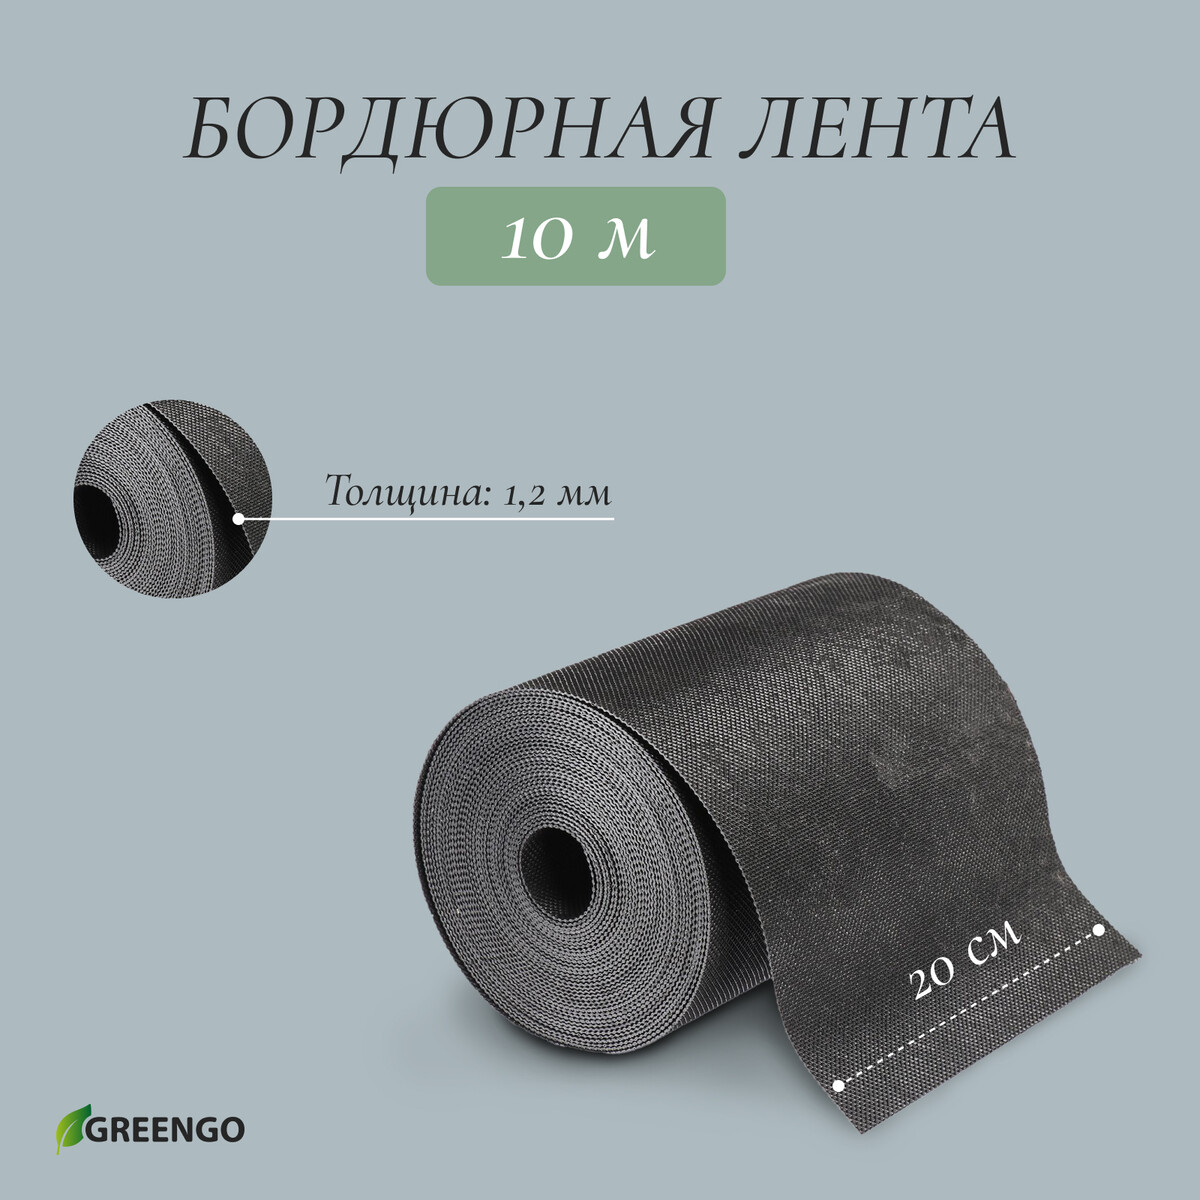 Лента бордюрная, 0.2 × 10 м, толщина 1.2 мм, пластиковая, черная, greengo лента бордюрная 0 1 × 10 м толщина 1 2 мм пластиковая коричневая greengo